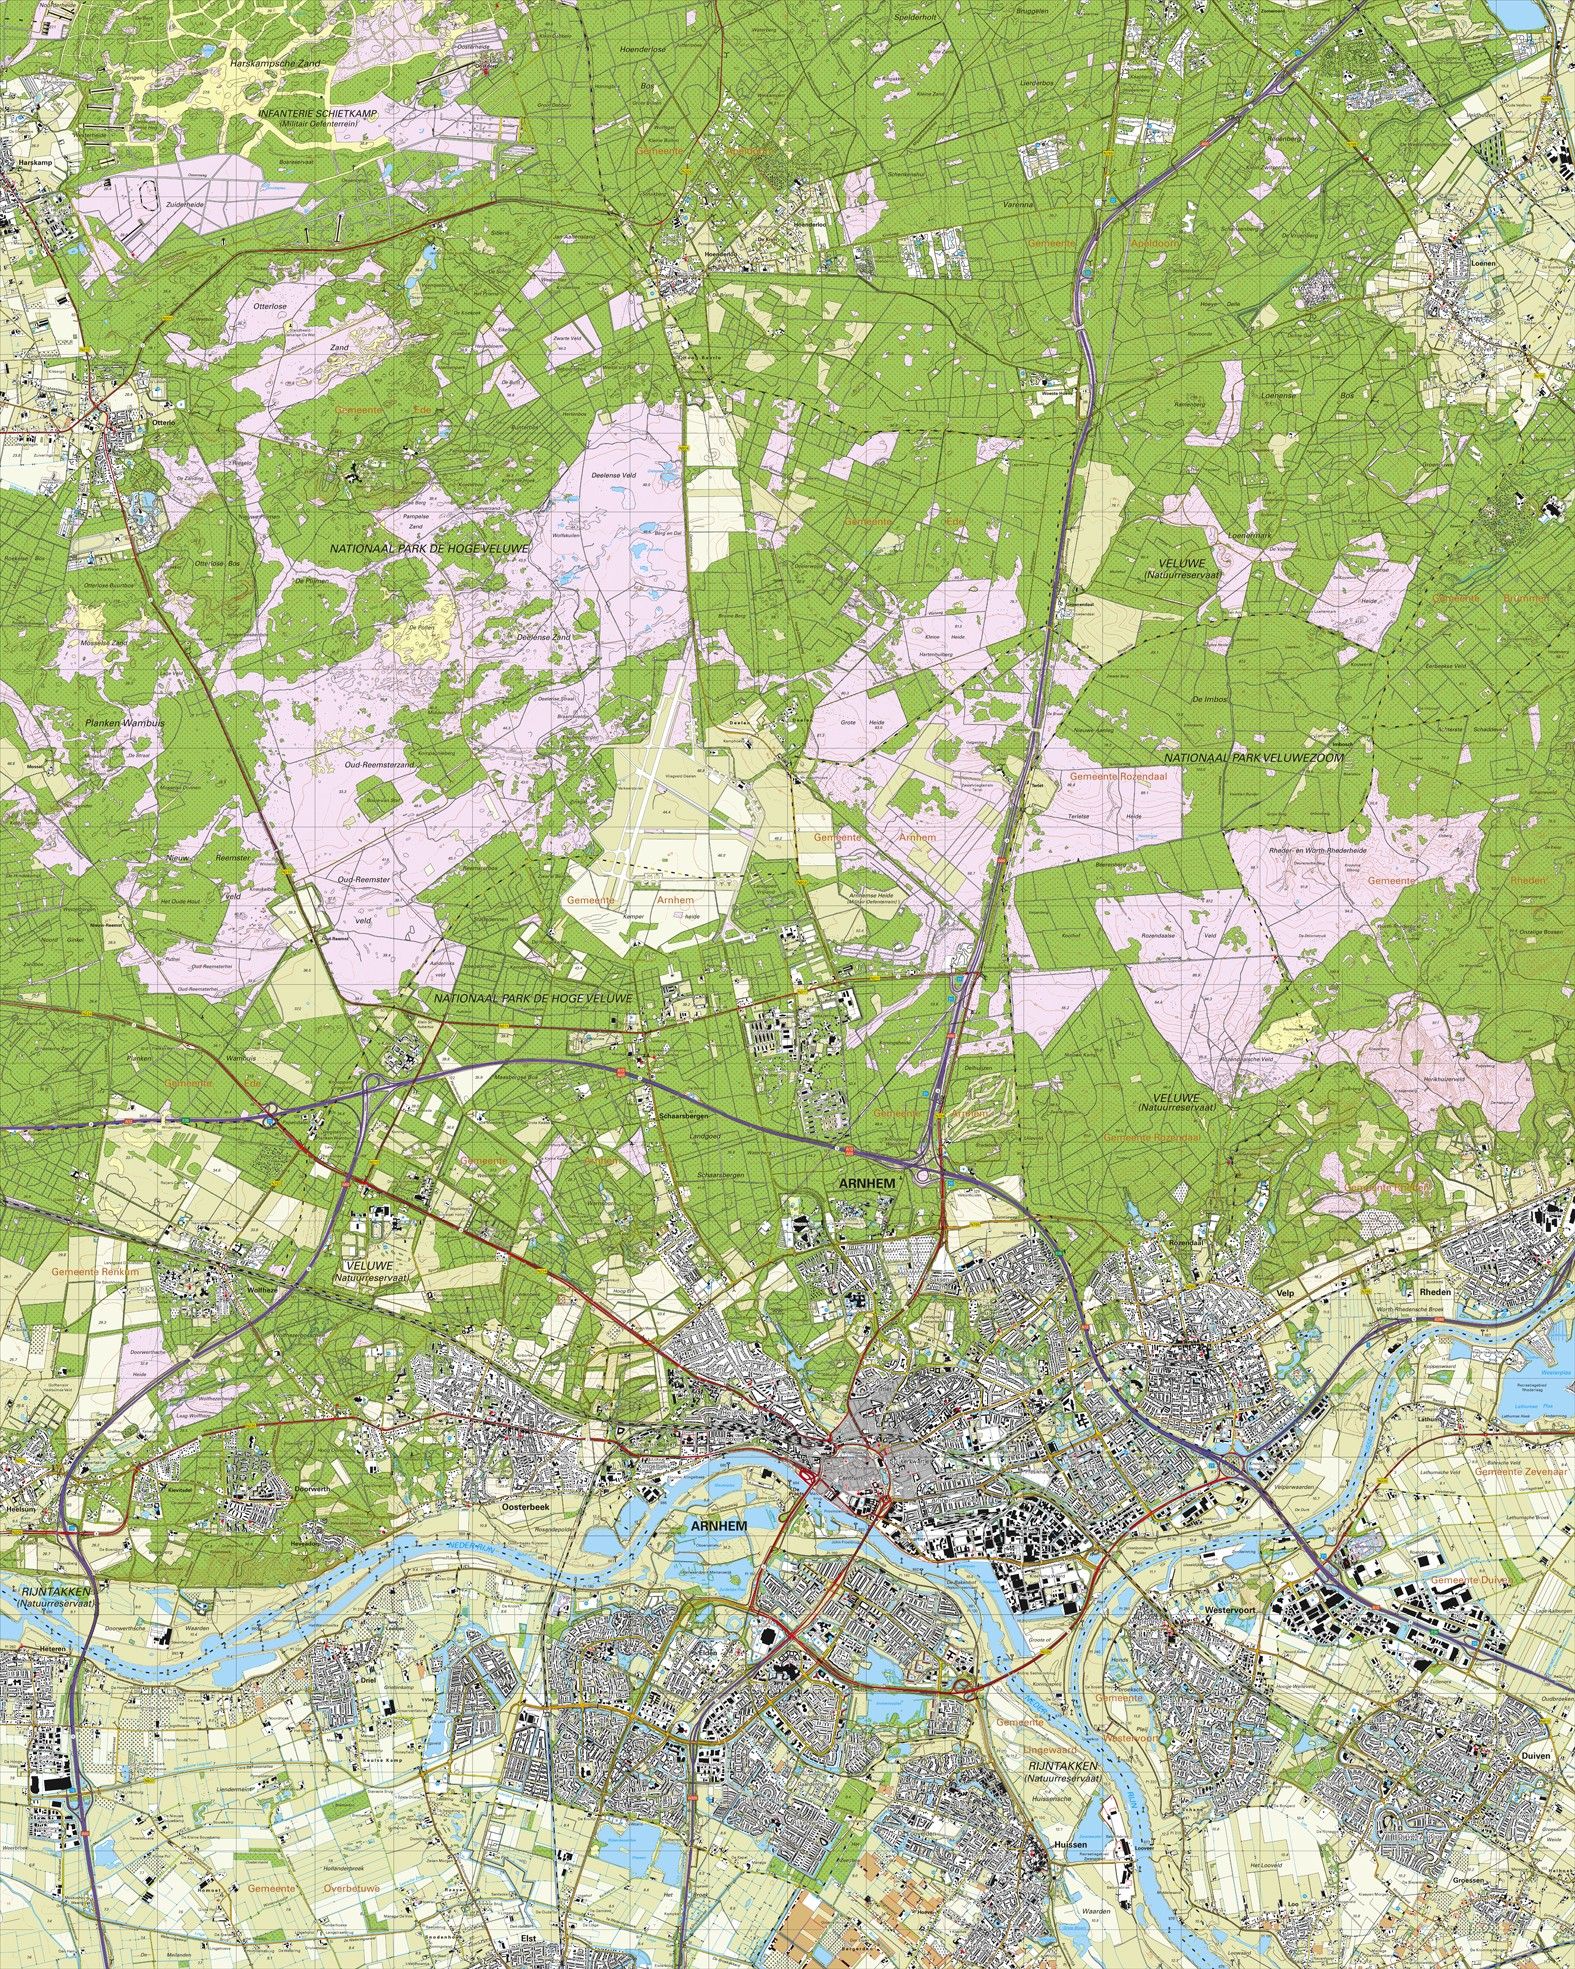 Topografische kaart schaal 1:25.000 (Arnhem, Velp, Duiven, Rheden, Westervoort, Oosterhout)